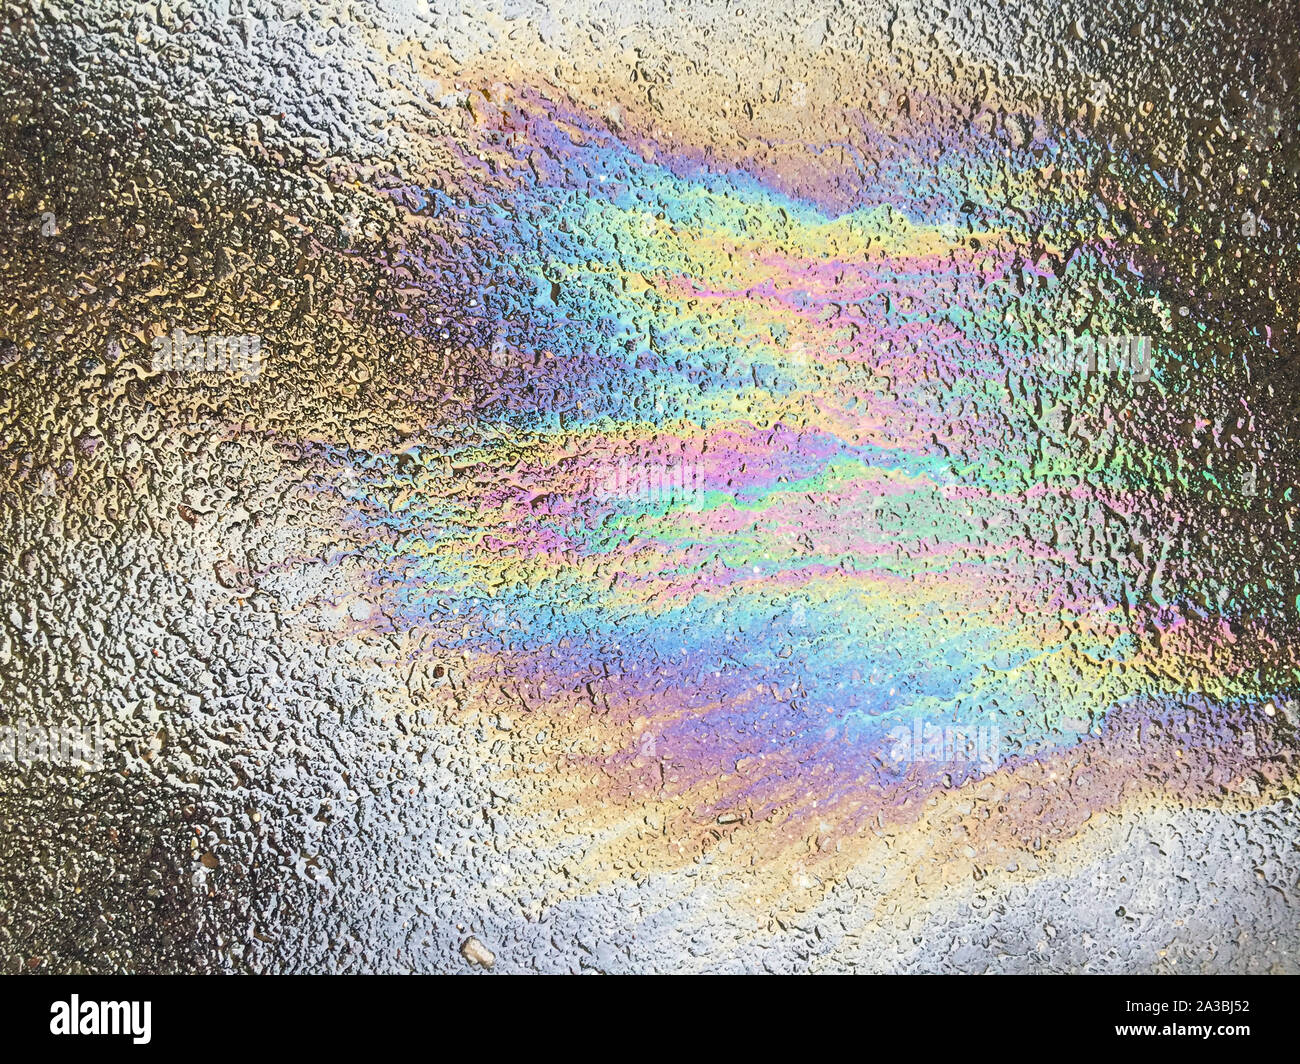 Oil spill pattern on asphalt Stock Photo